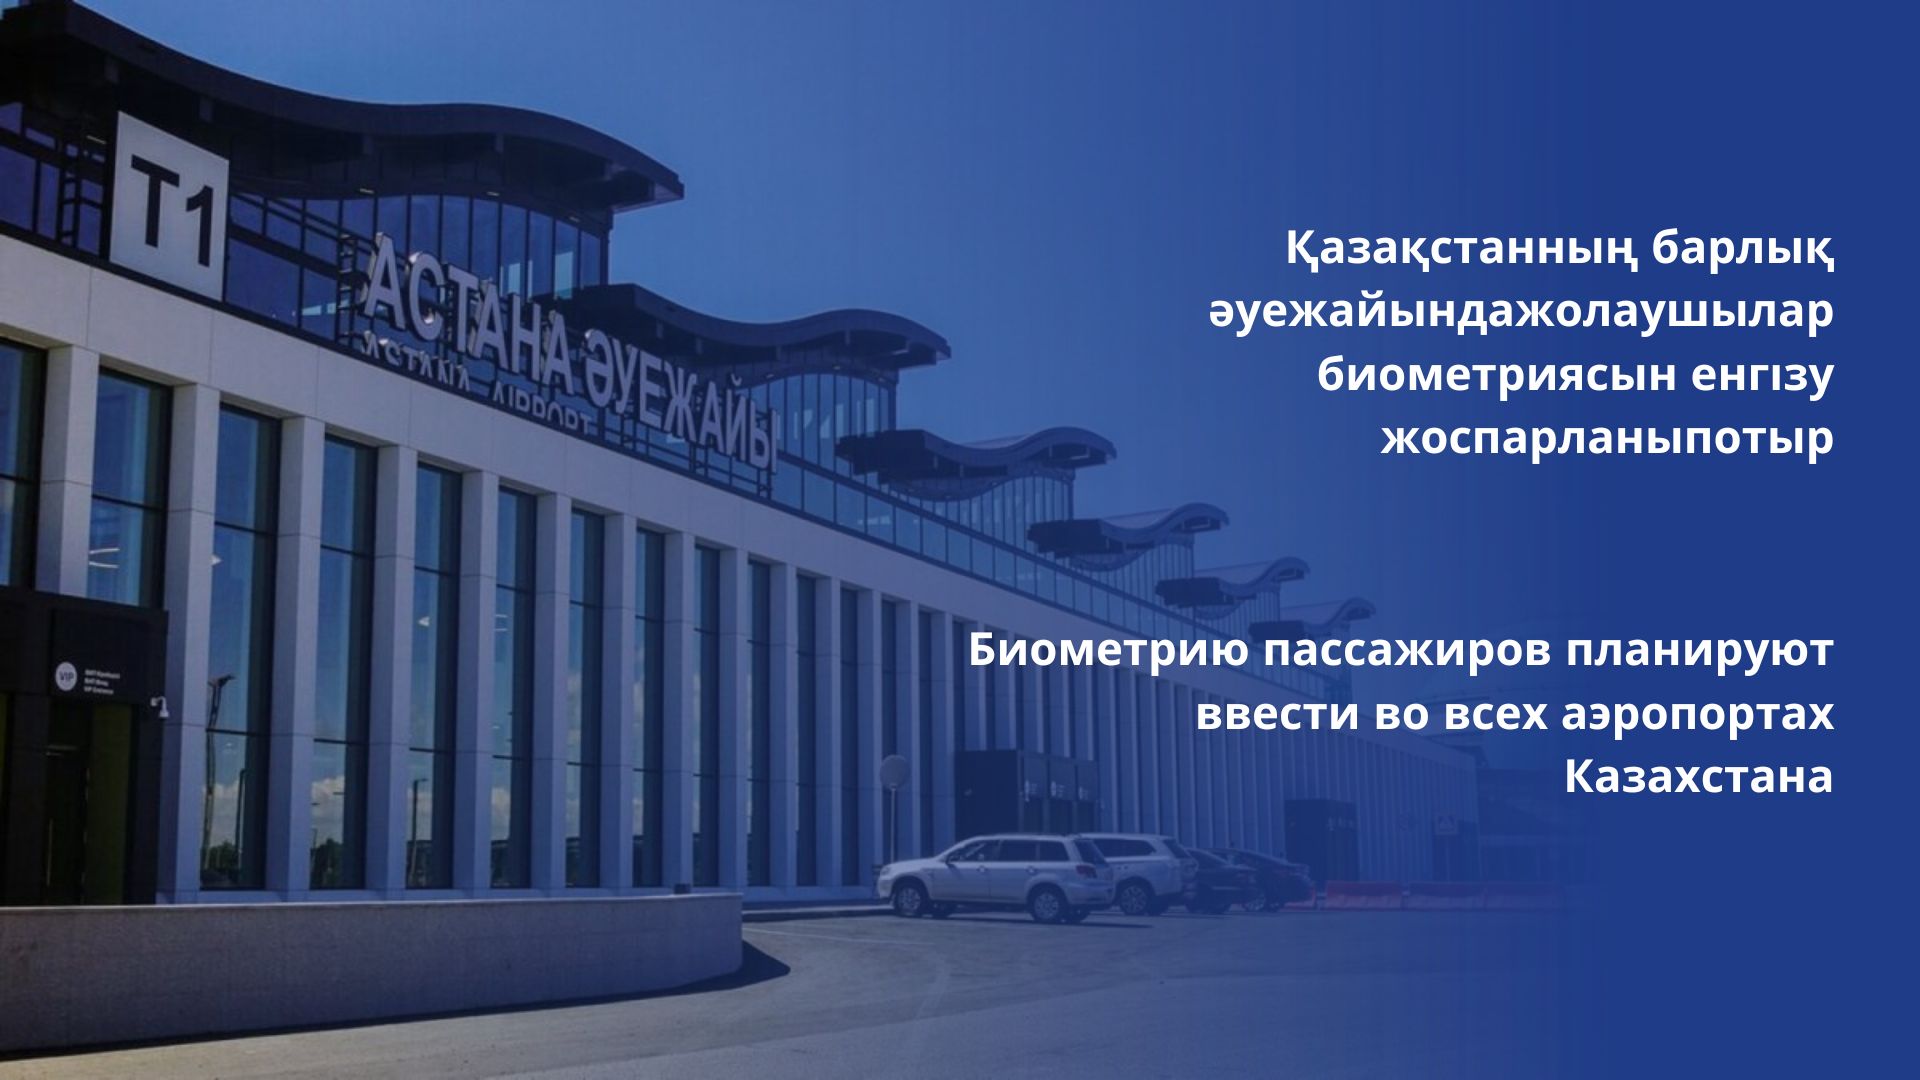 Биометрию пассажиров планируют ввести во всех аэропортах Казахстана